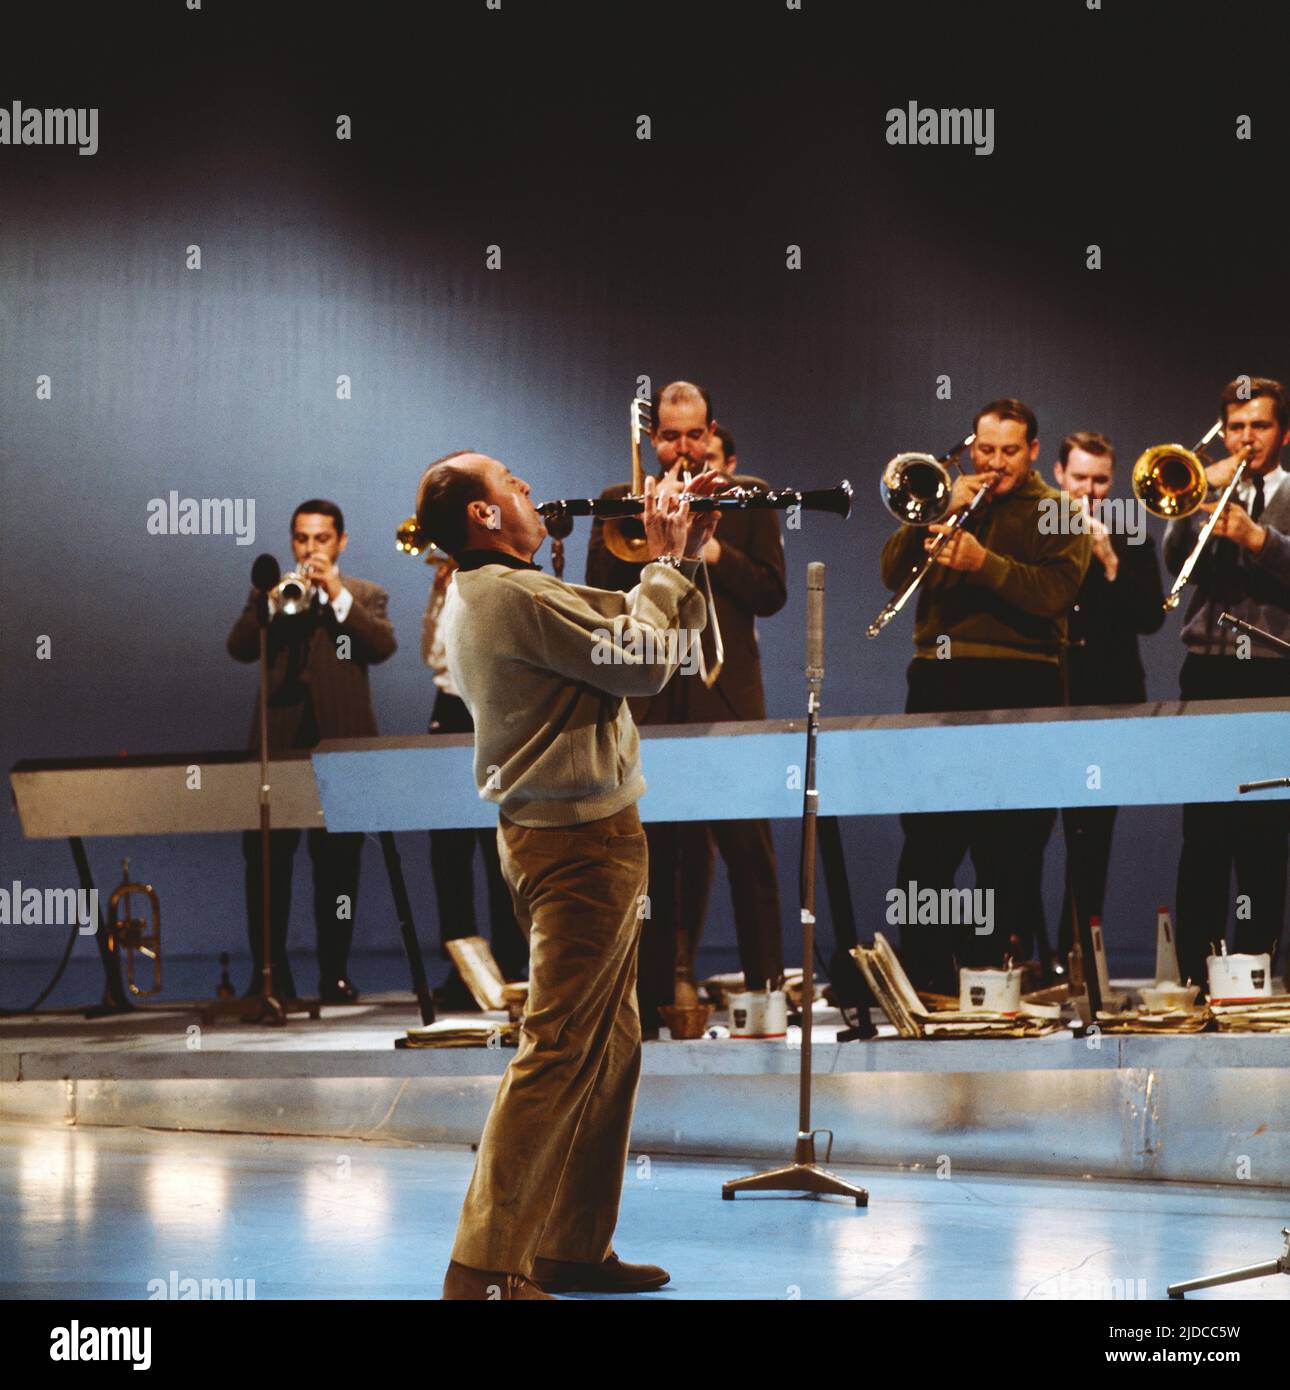 Woody Herman, amerikanischer Jazz-Klarinettist und Bandleader, hier bei einem Auftritt mit Jazzband, circa 1969. Woody Herman, American Jazz clarinetist and bandleader, shown here performing, with Jazz band, circa 1969. Stock Photo